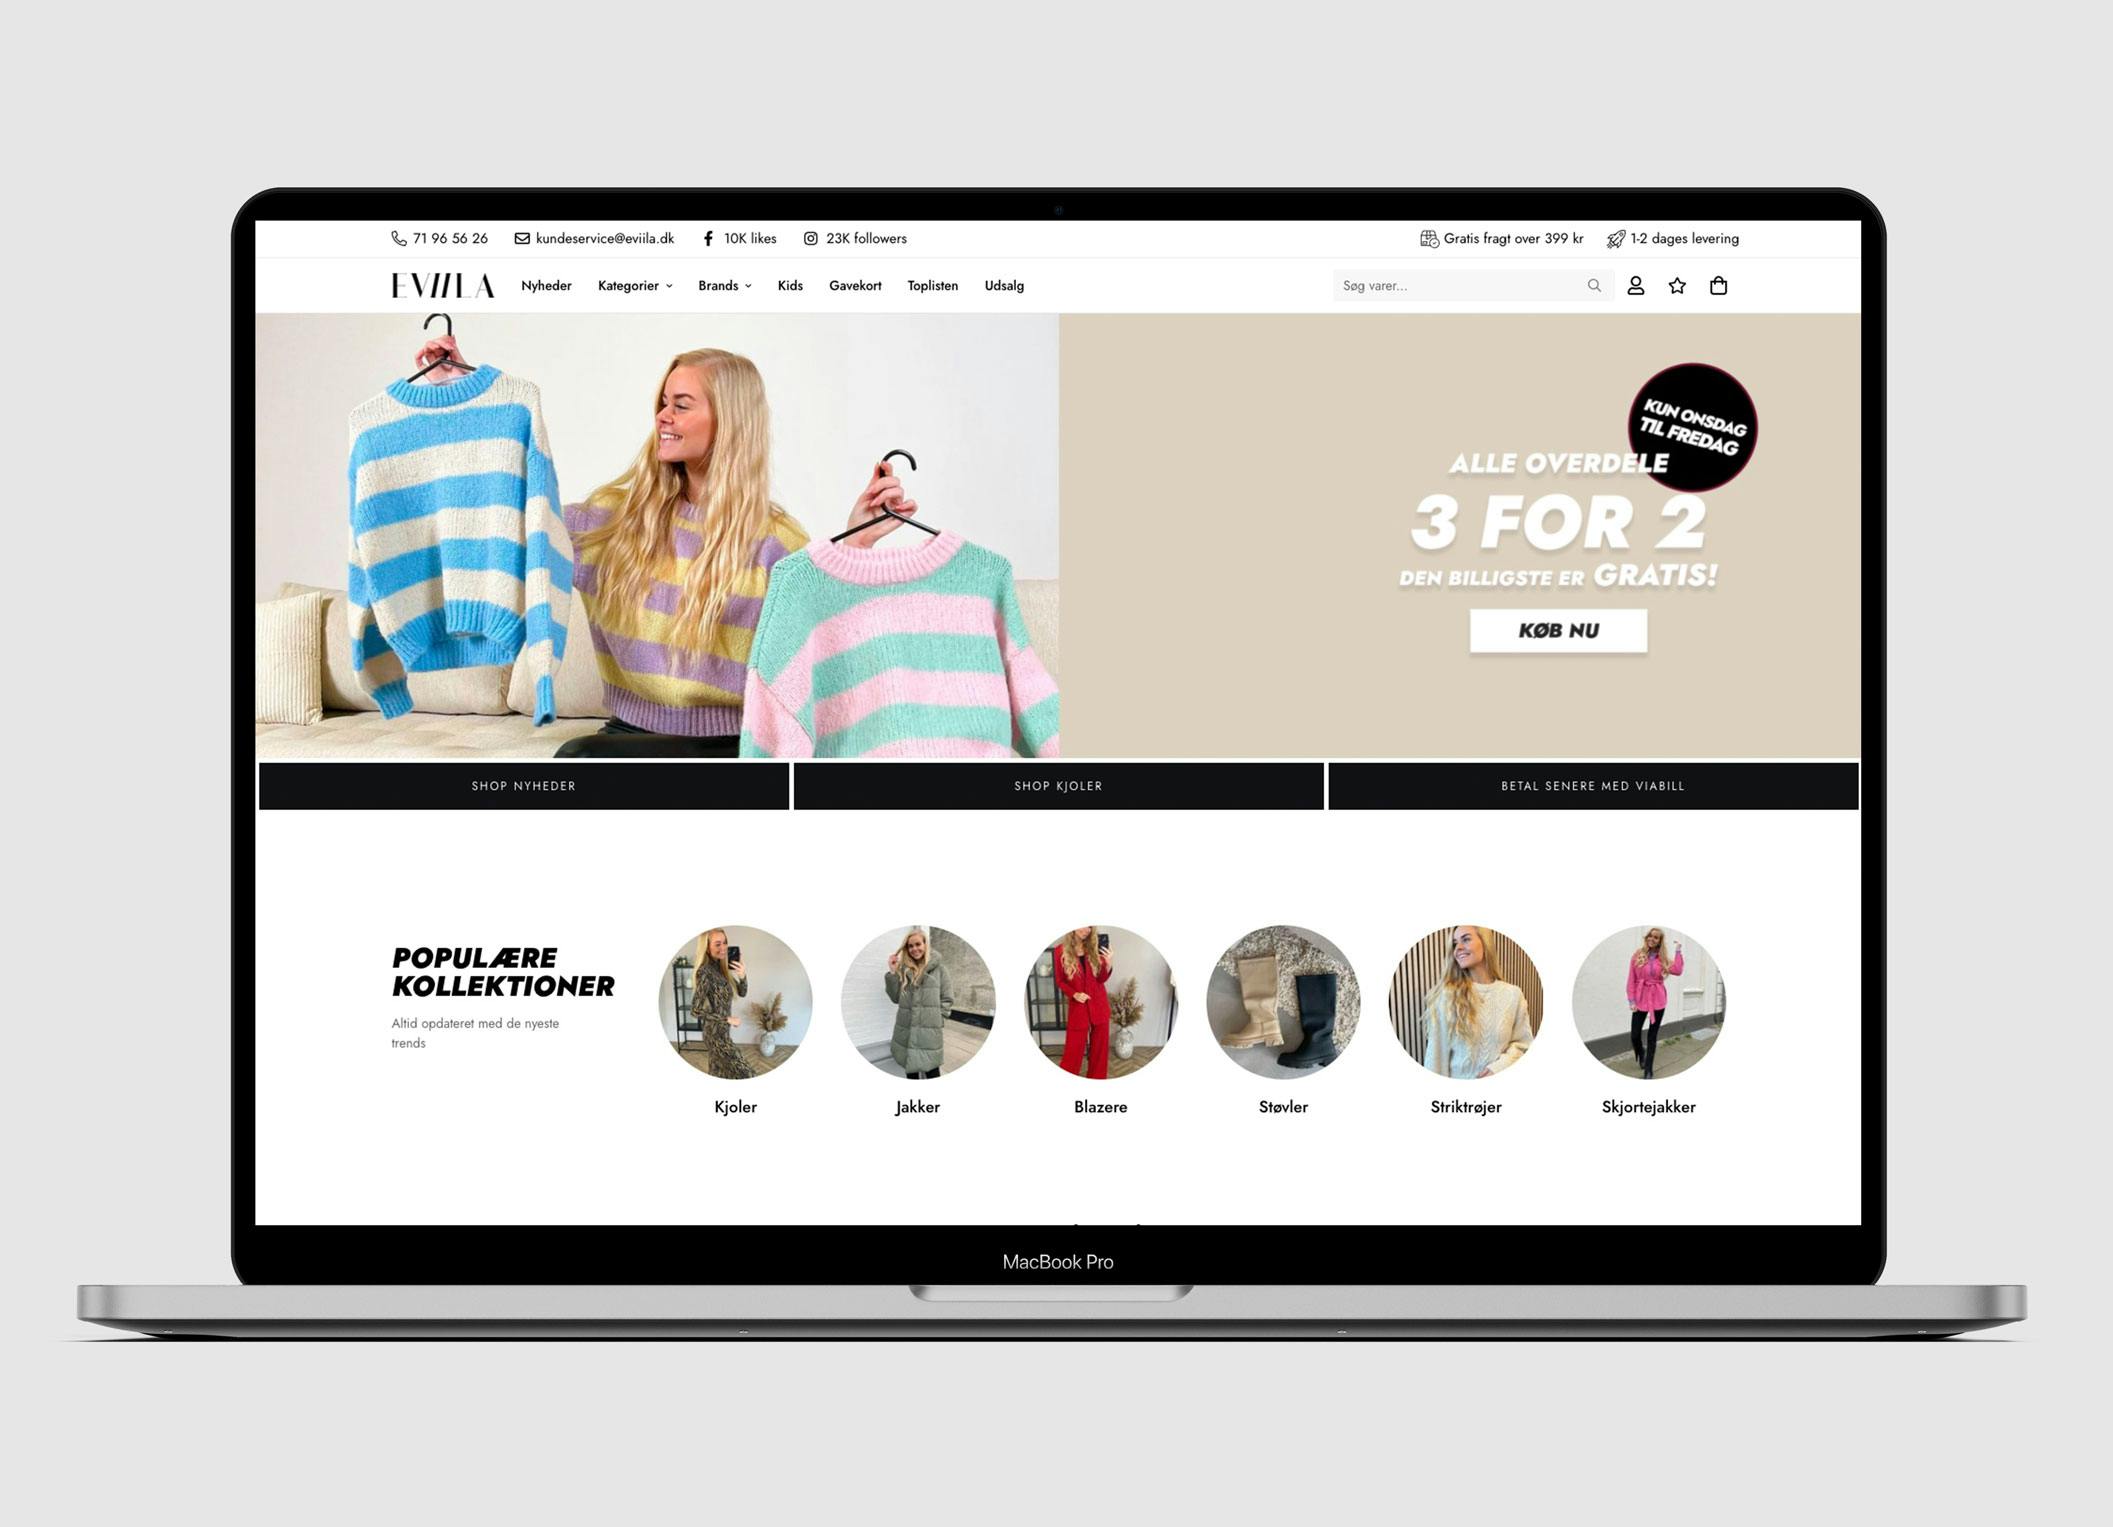 Rejse Hård ring balkon Webshop med salg af tøj - Omsætning i 2021 på 9.400.000 kr. - 1600  anmeldelser på Trustpilot med en score på 4,8 stjerner.